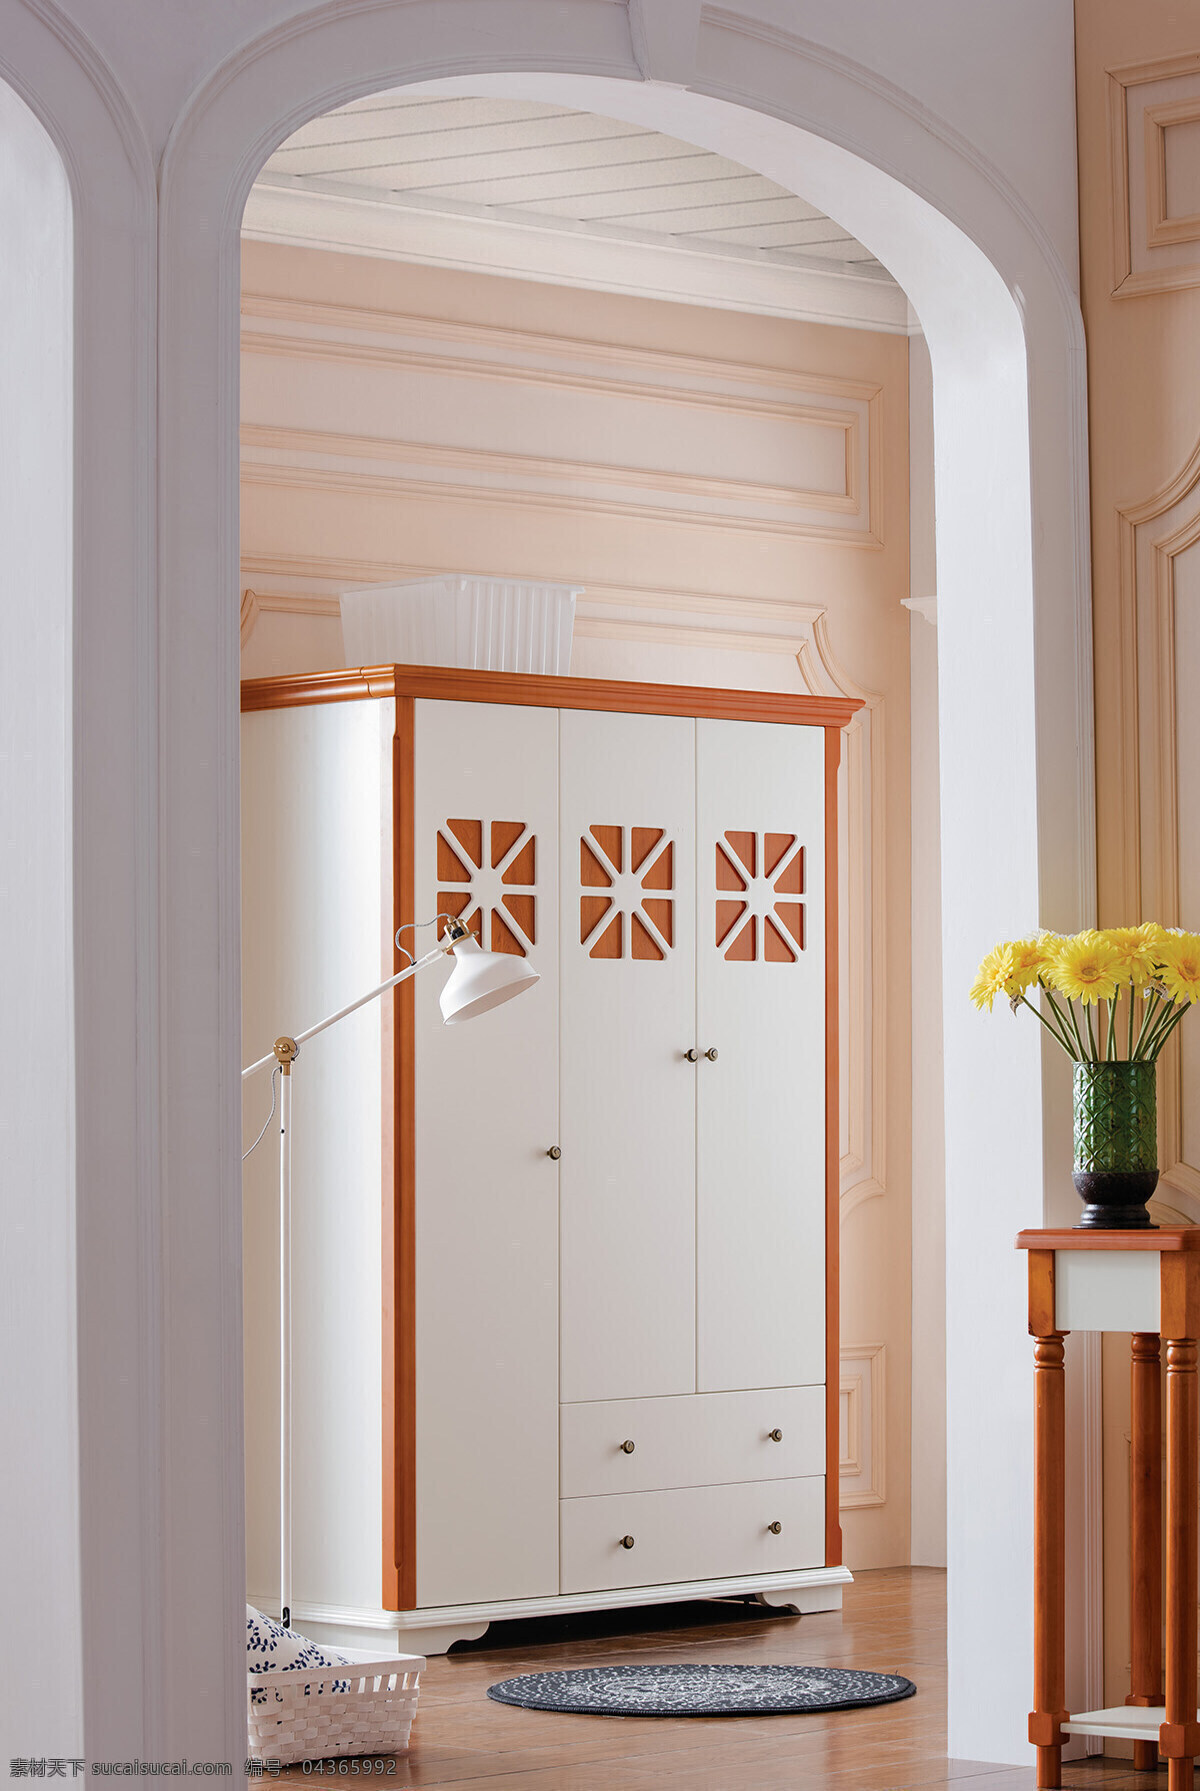 现代 米色 系列 衣柜 3d 效果图 现代简约 田园风 室内 卧室 场景图 清新 干净